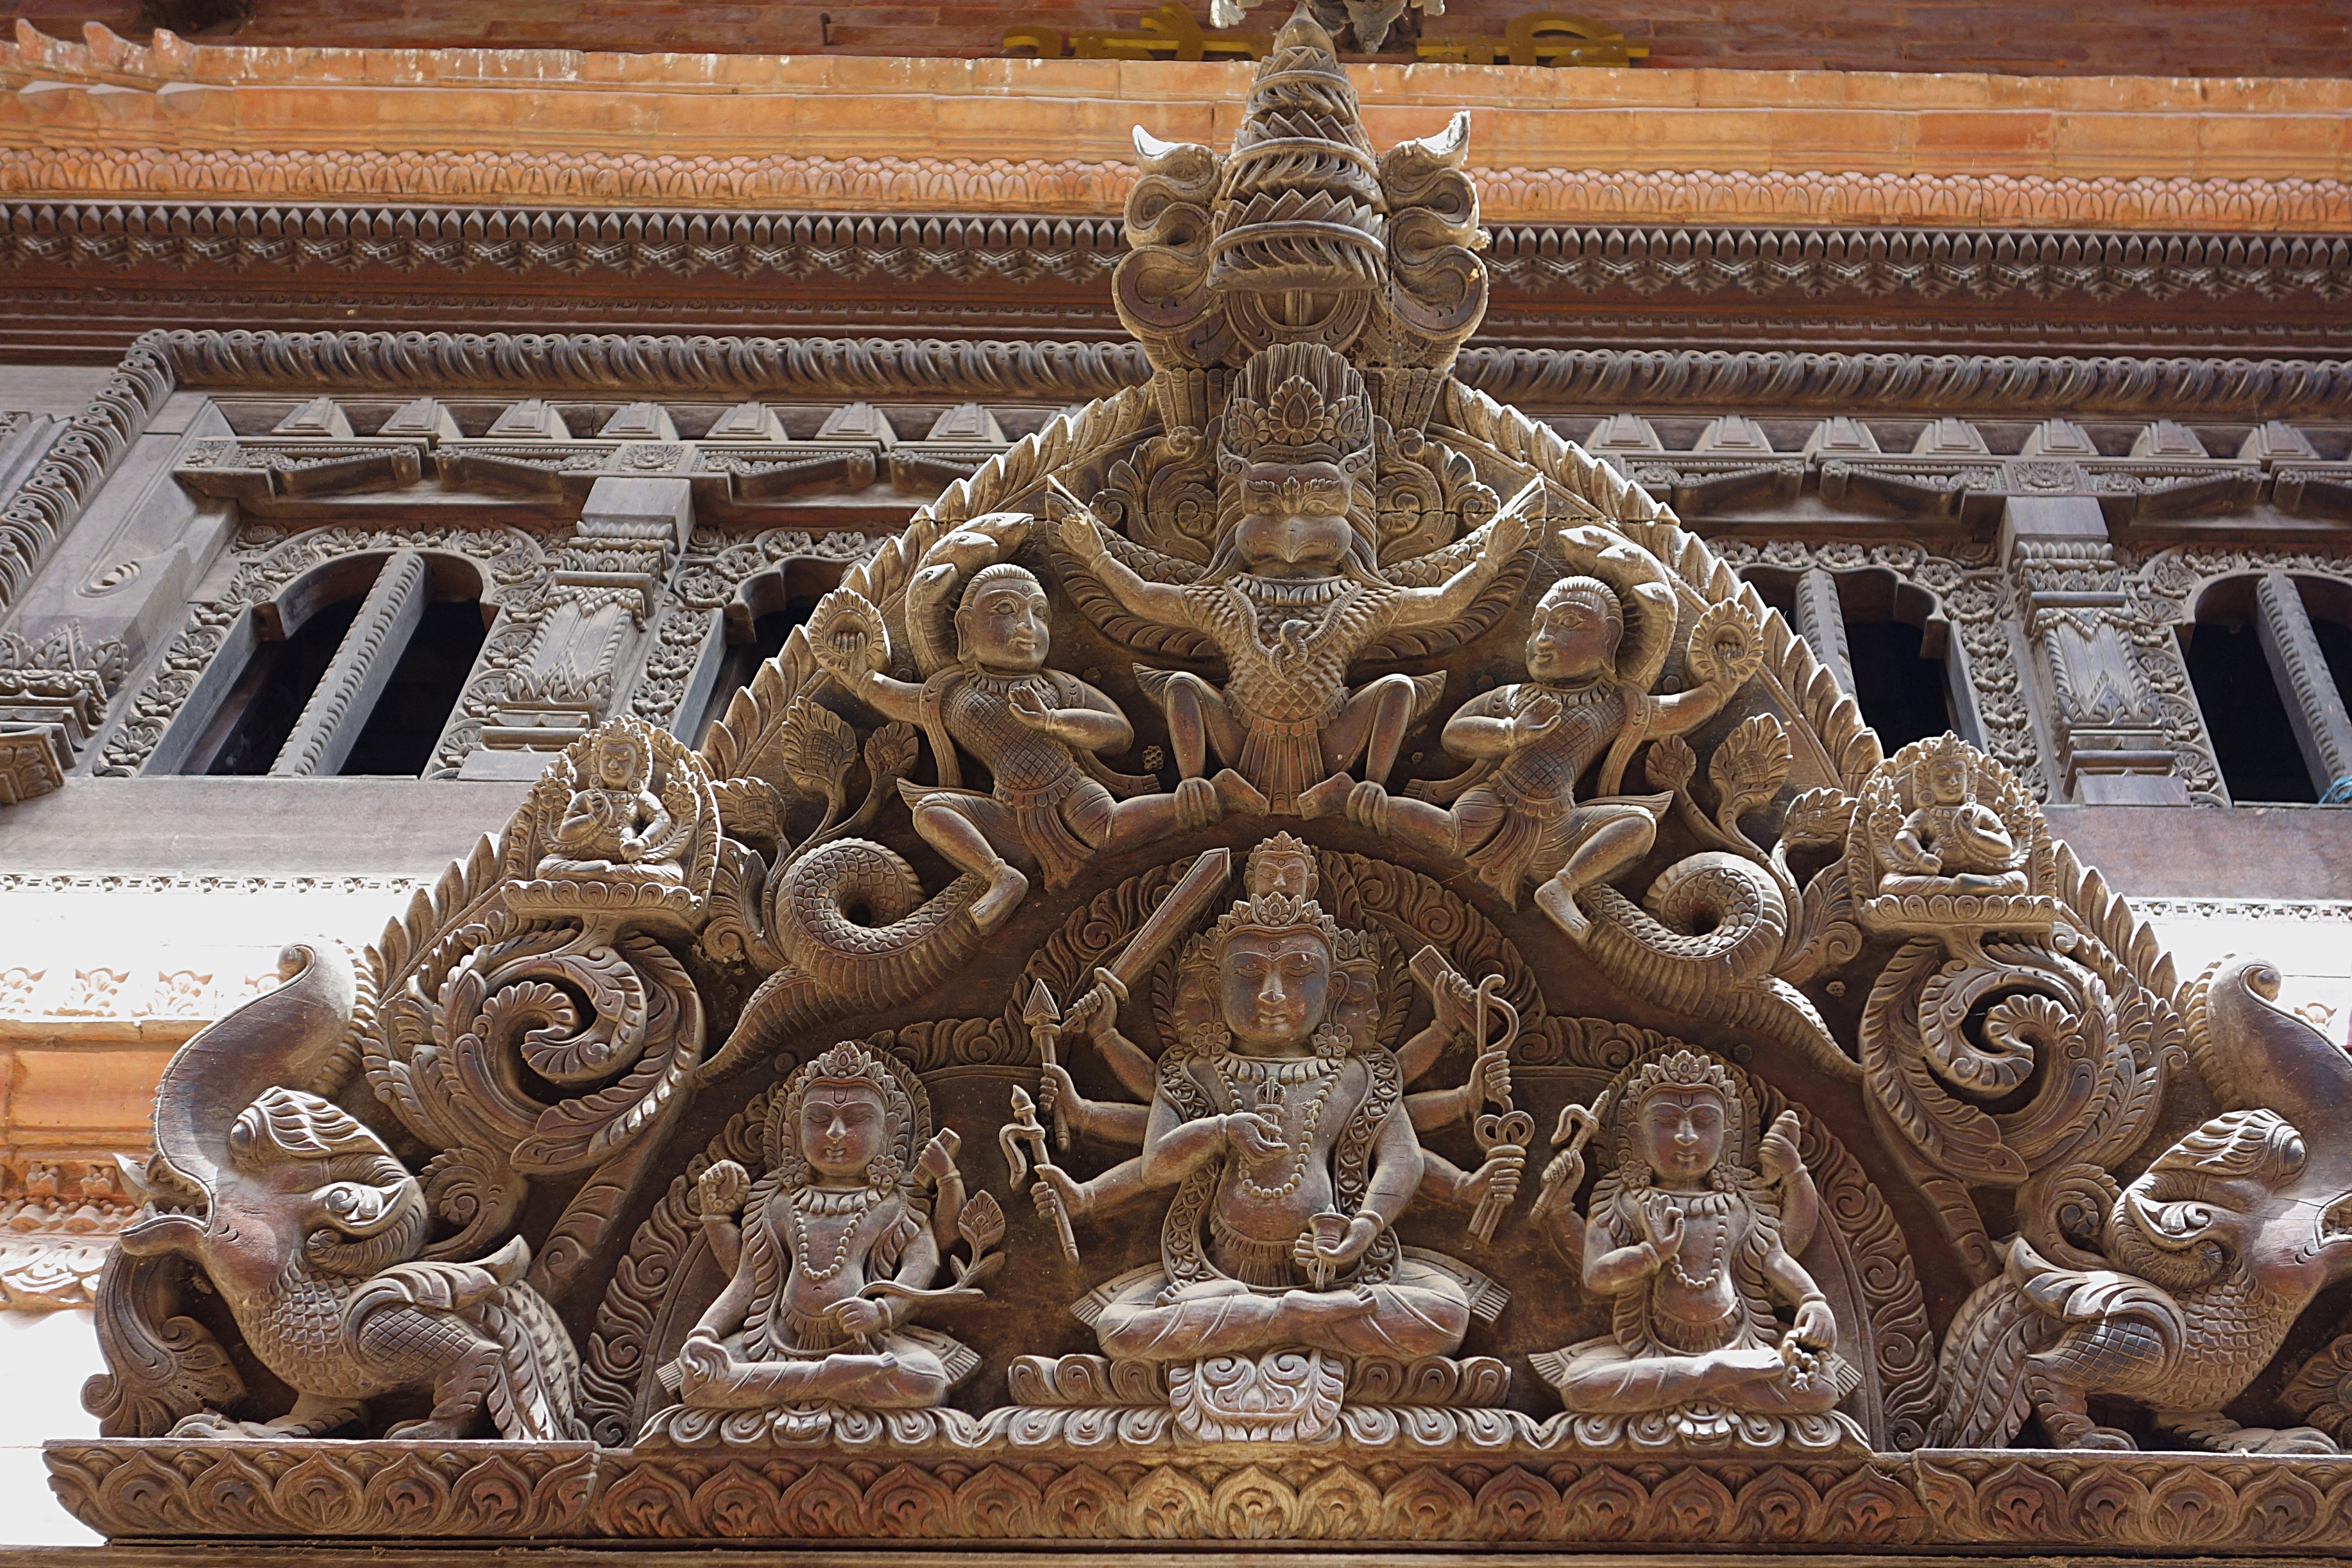 Резное деревянное навершие дверей - входа в храм в Бхактапуре. Фото Морошкина В.В.